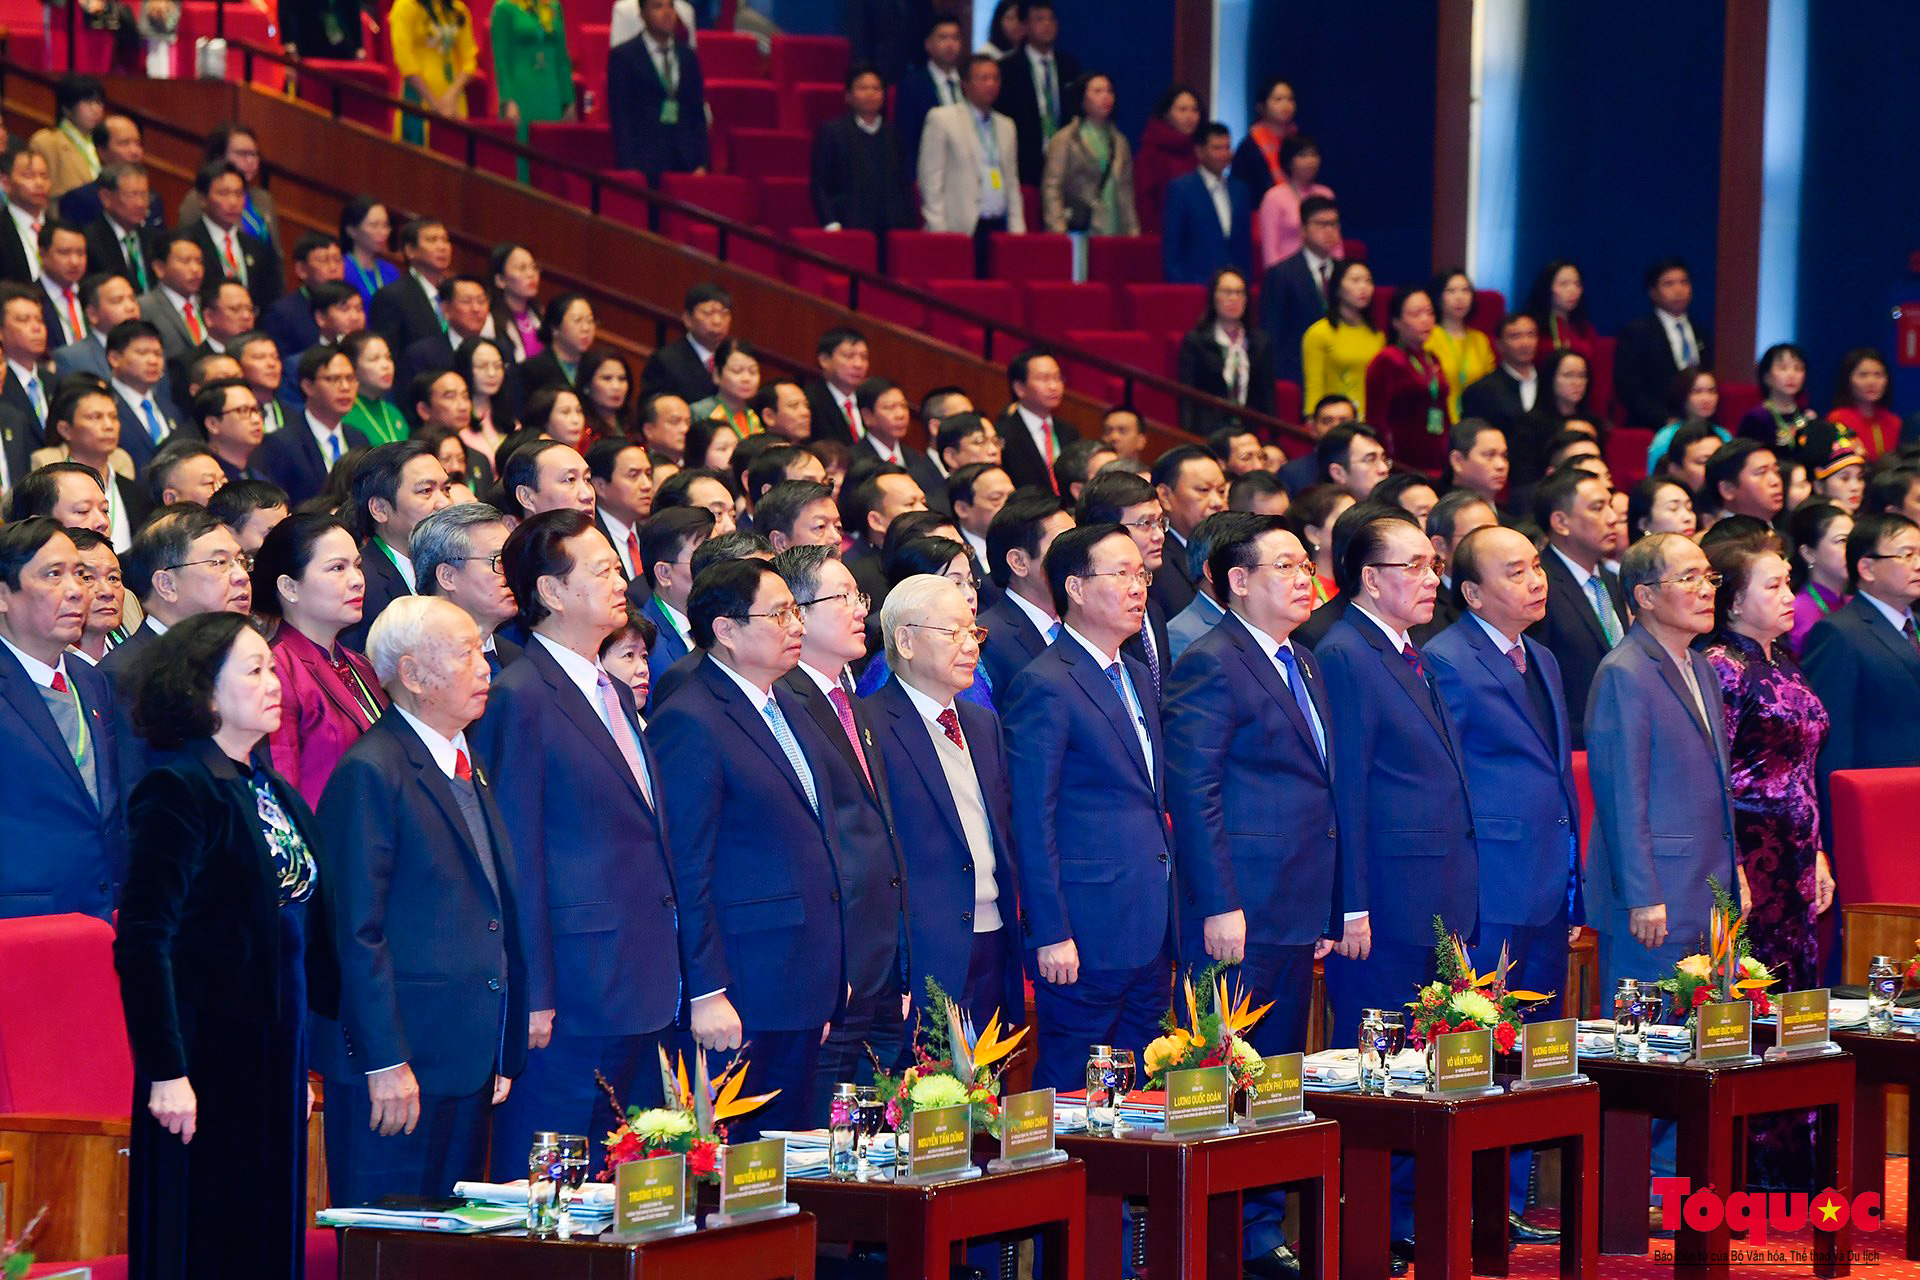 Khai mạc trọng thể Đại hội đại biểu toàn quốc Hội Nông dân Việt Nam lần thứ VIII, nhiệm kỳ 2023-2028 - Ảnh 4.